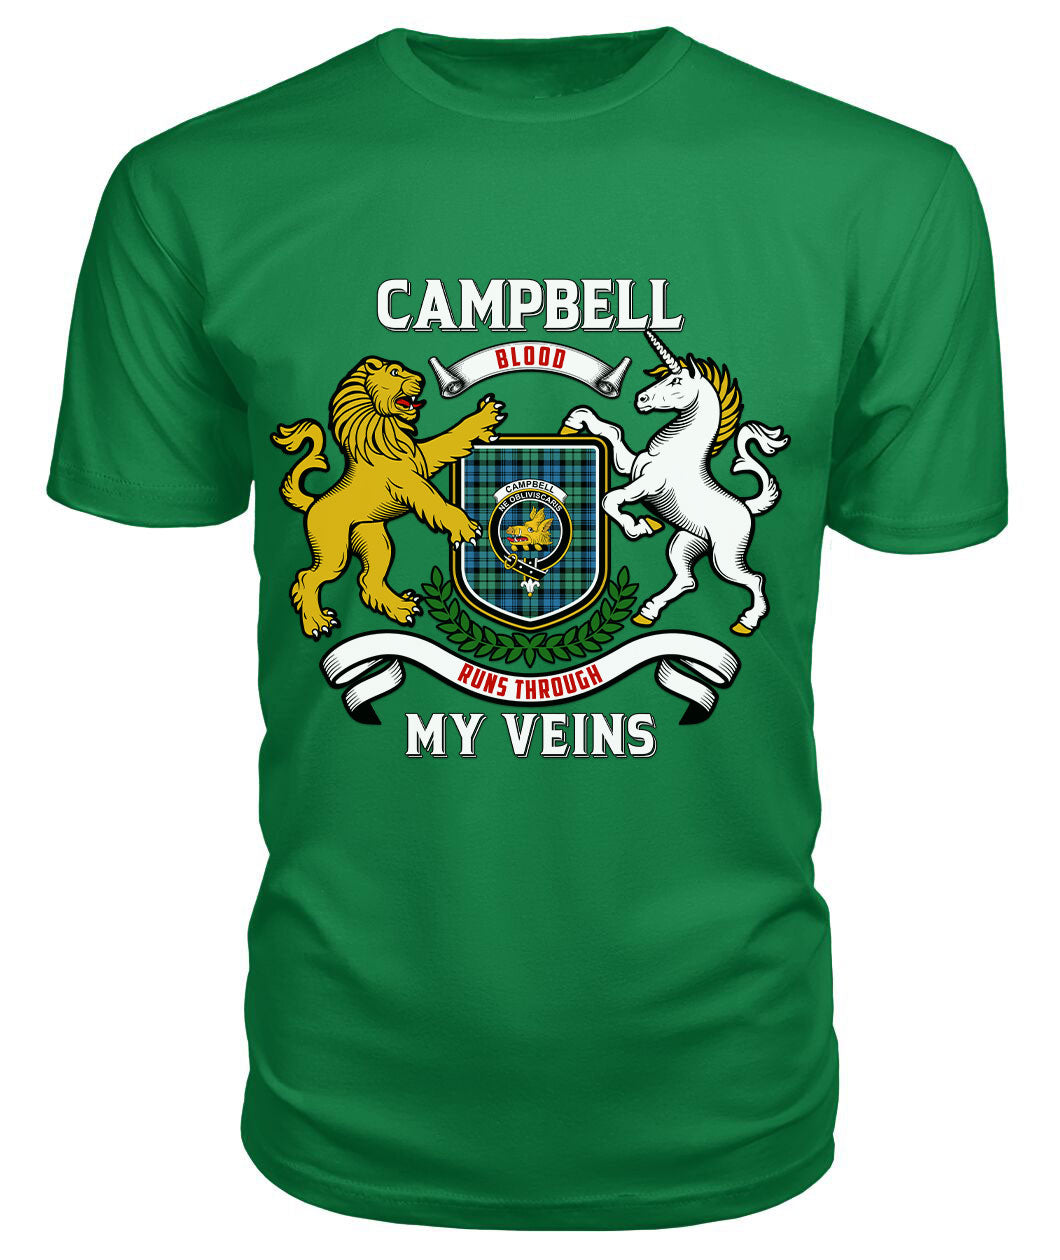 Campbell Ancient 01 Tartan Crest 2D T-shirt - Blood Runs Through My Veins Style